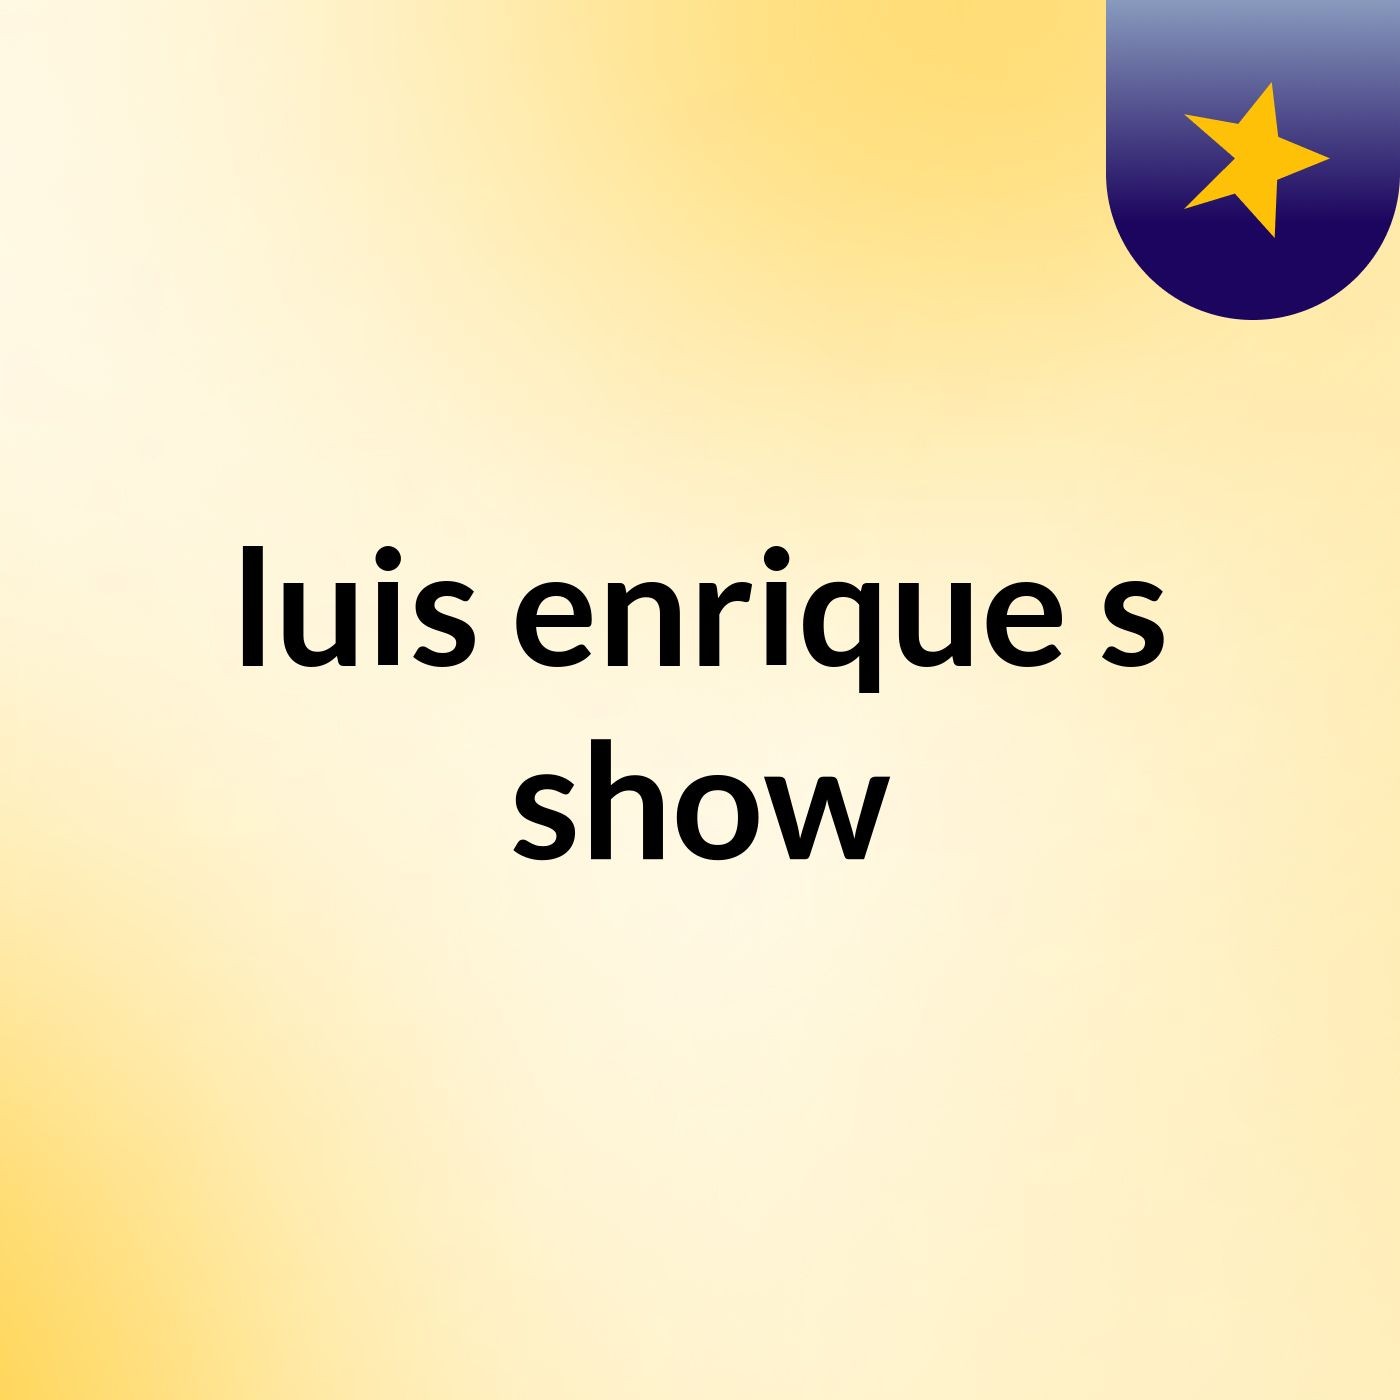 luis enrique's show